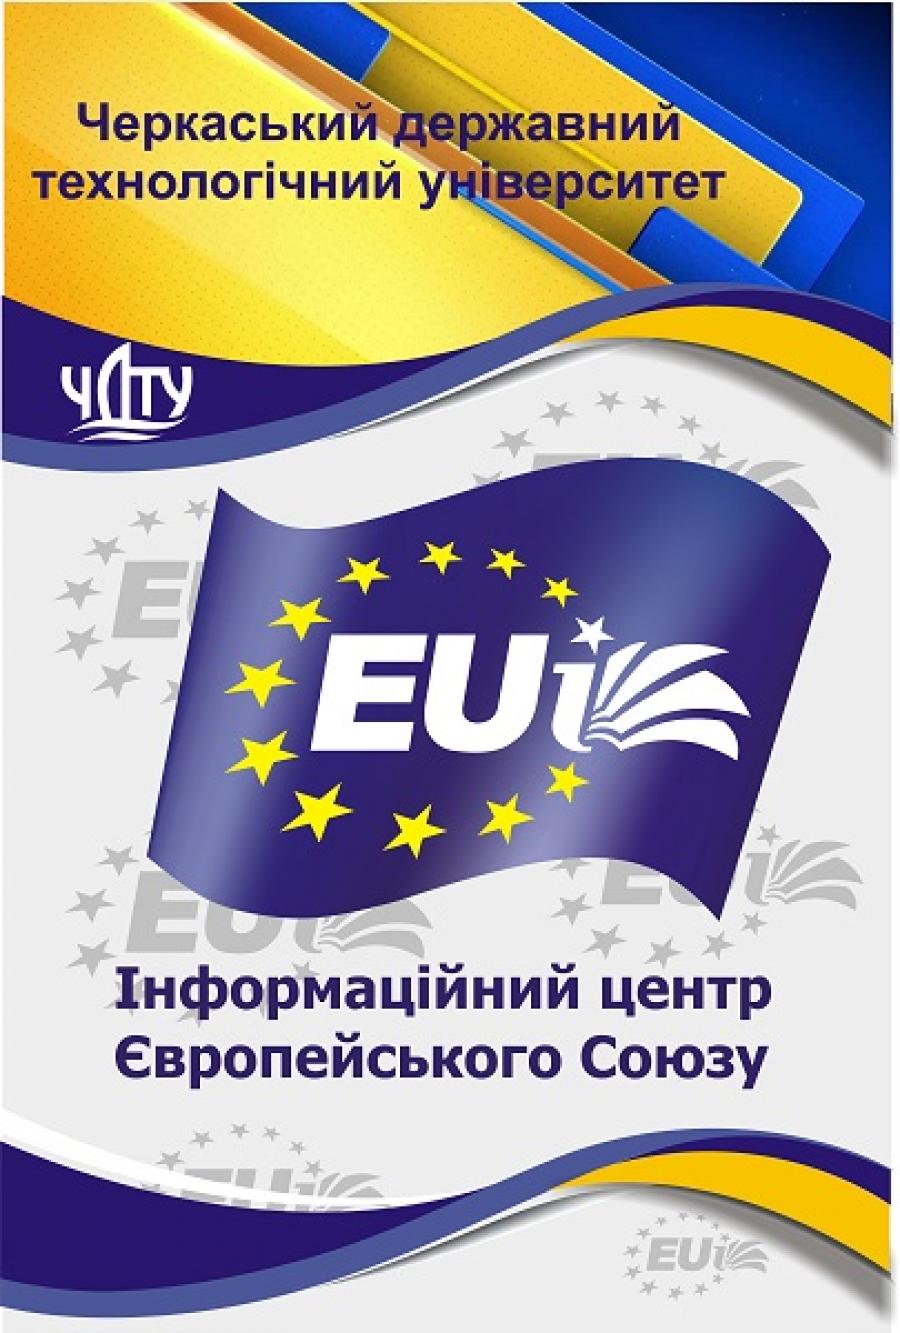 Інформаційний центр ЄС в Черкаській області запрошує долучитися до навчальної програми STARTS in MOTION від Єврокомісії для впровадження tech-art проєктів